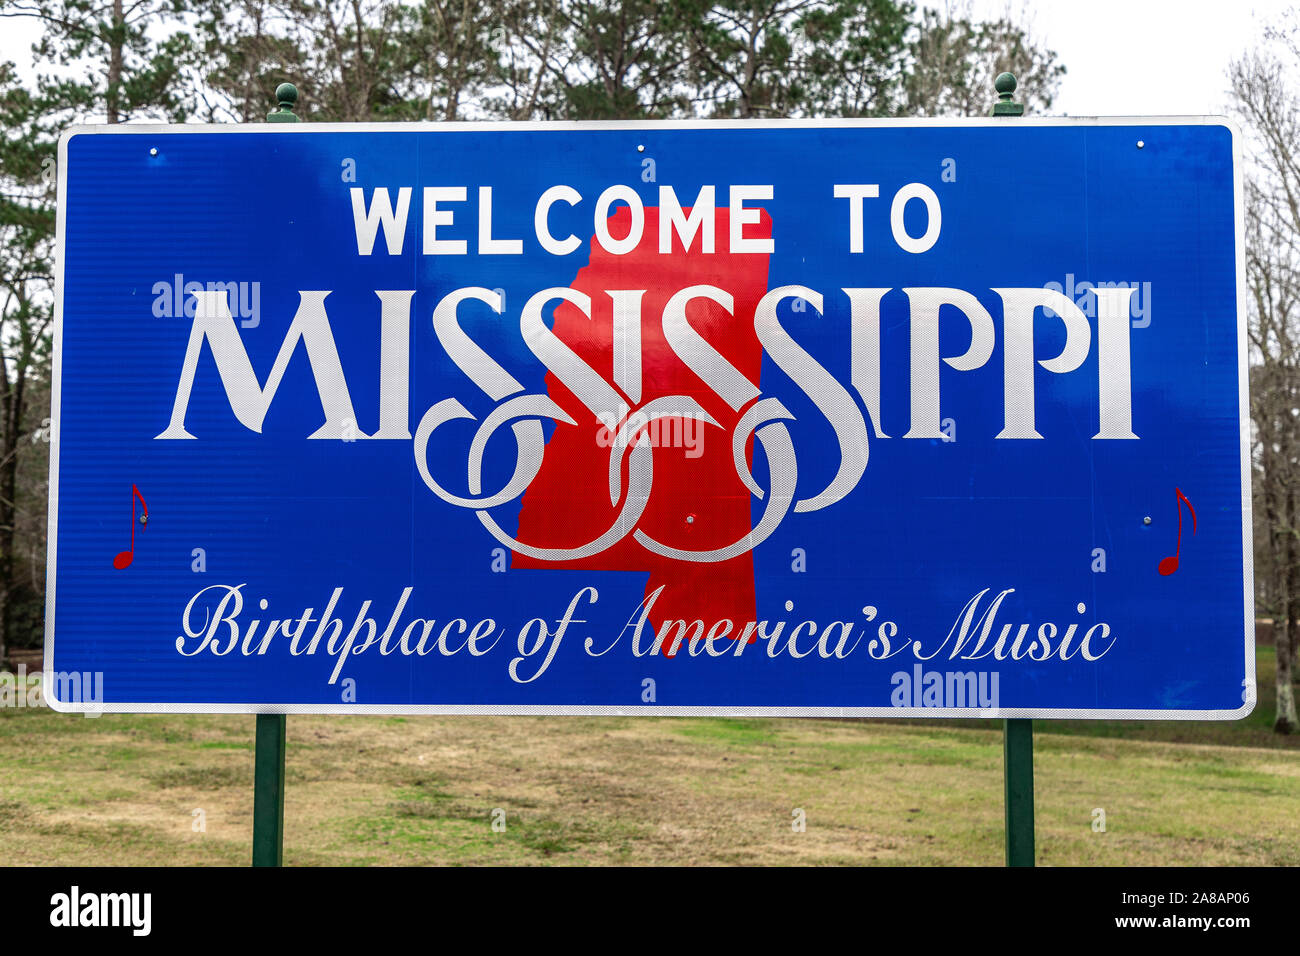 Ligne d'État du Mississippi, Bienvenue au Mississippi, berceau de la musique de l'Amérique. Emplacement Près de l'Interstate 10 à Pearlington, Mississippi. Banque D'Images